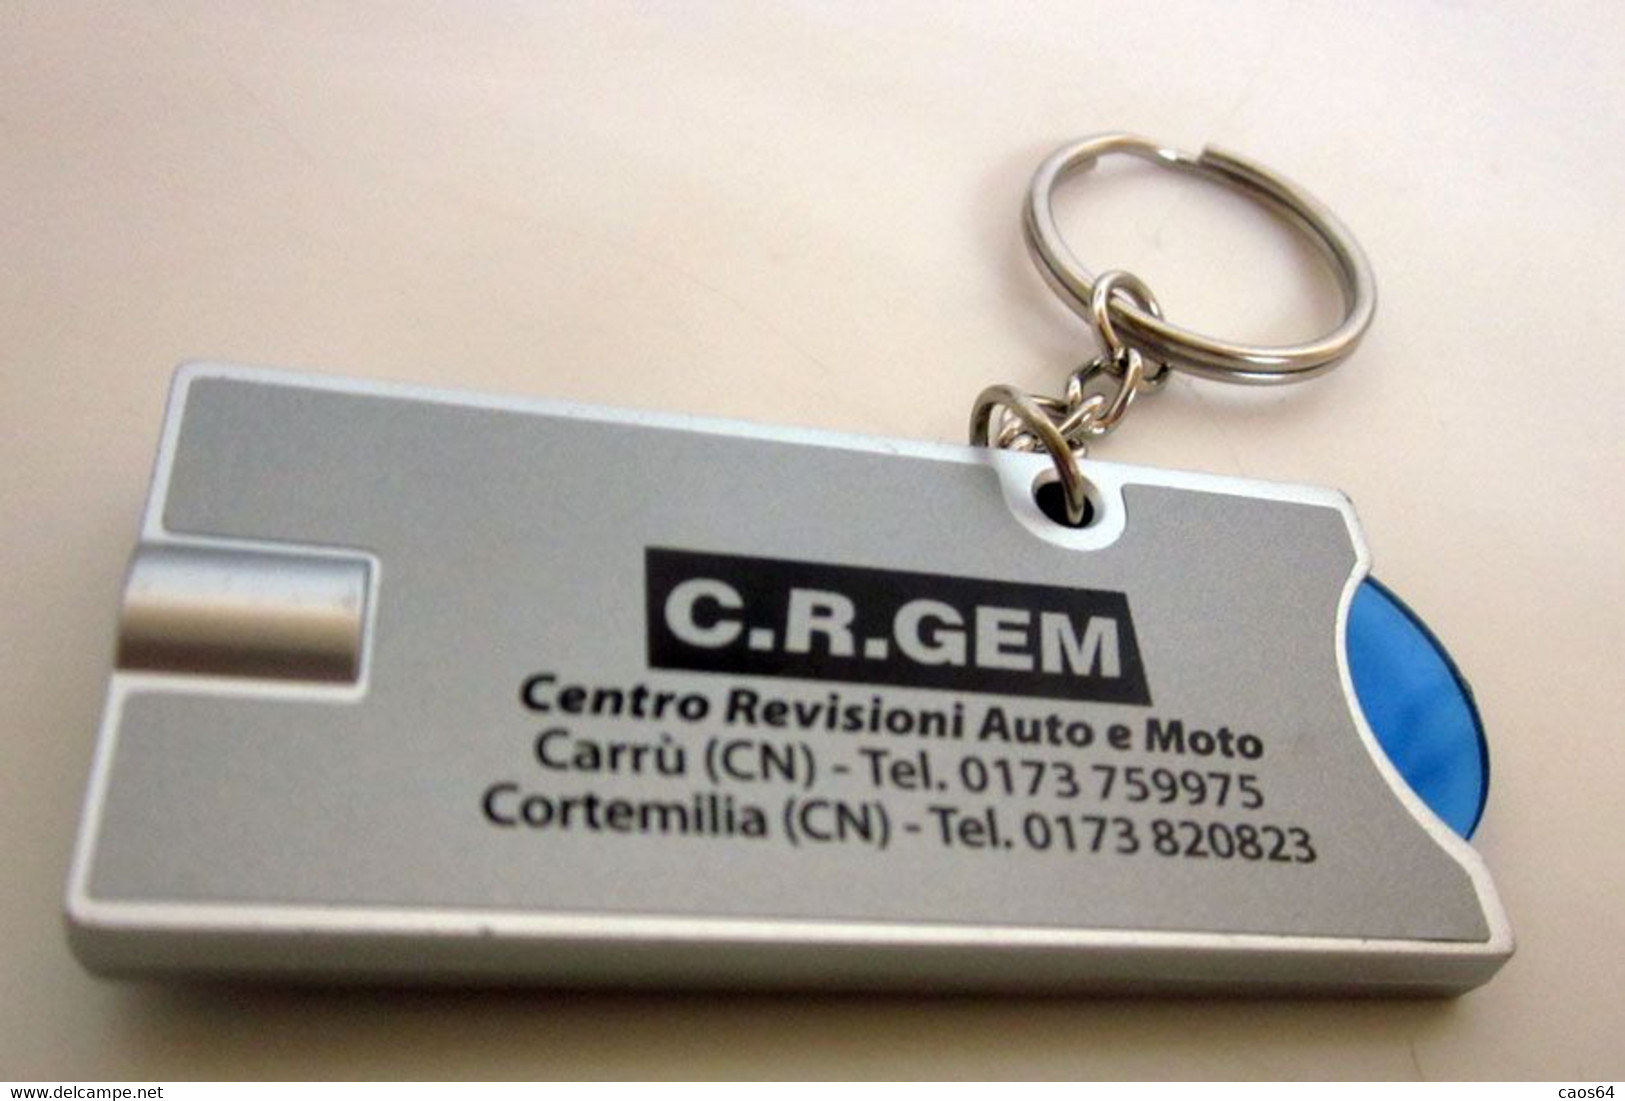 C.R.GEM CENTRO REVISIONI CORTEMILIA CUNEO LED PORTACHIAVI - Sleutelhangers